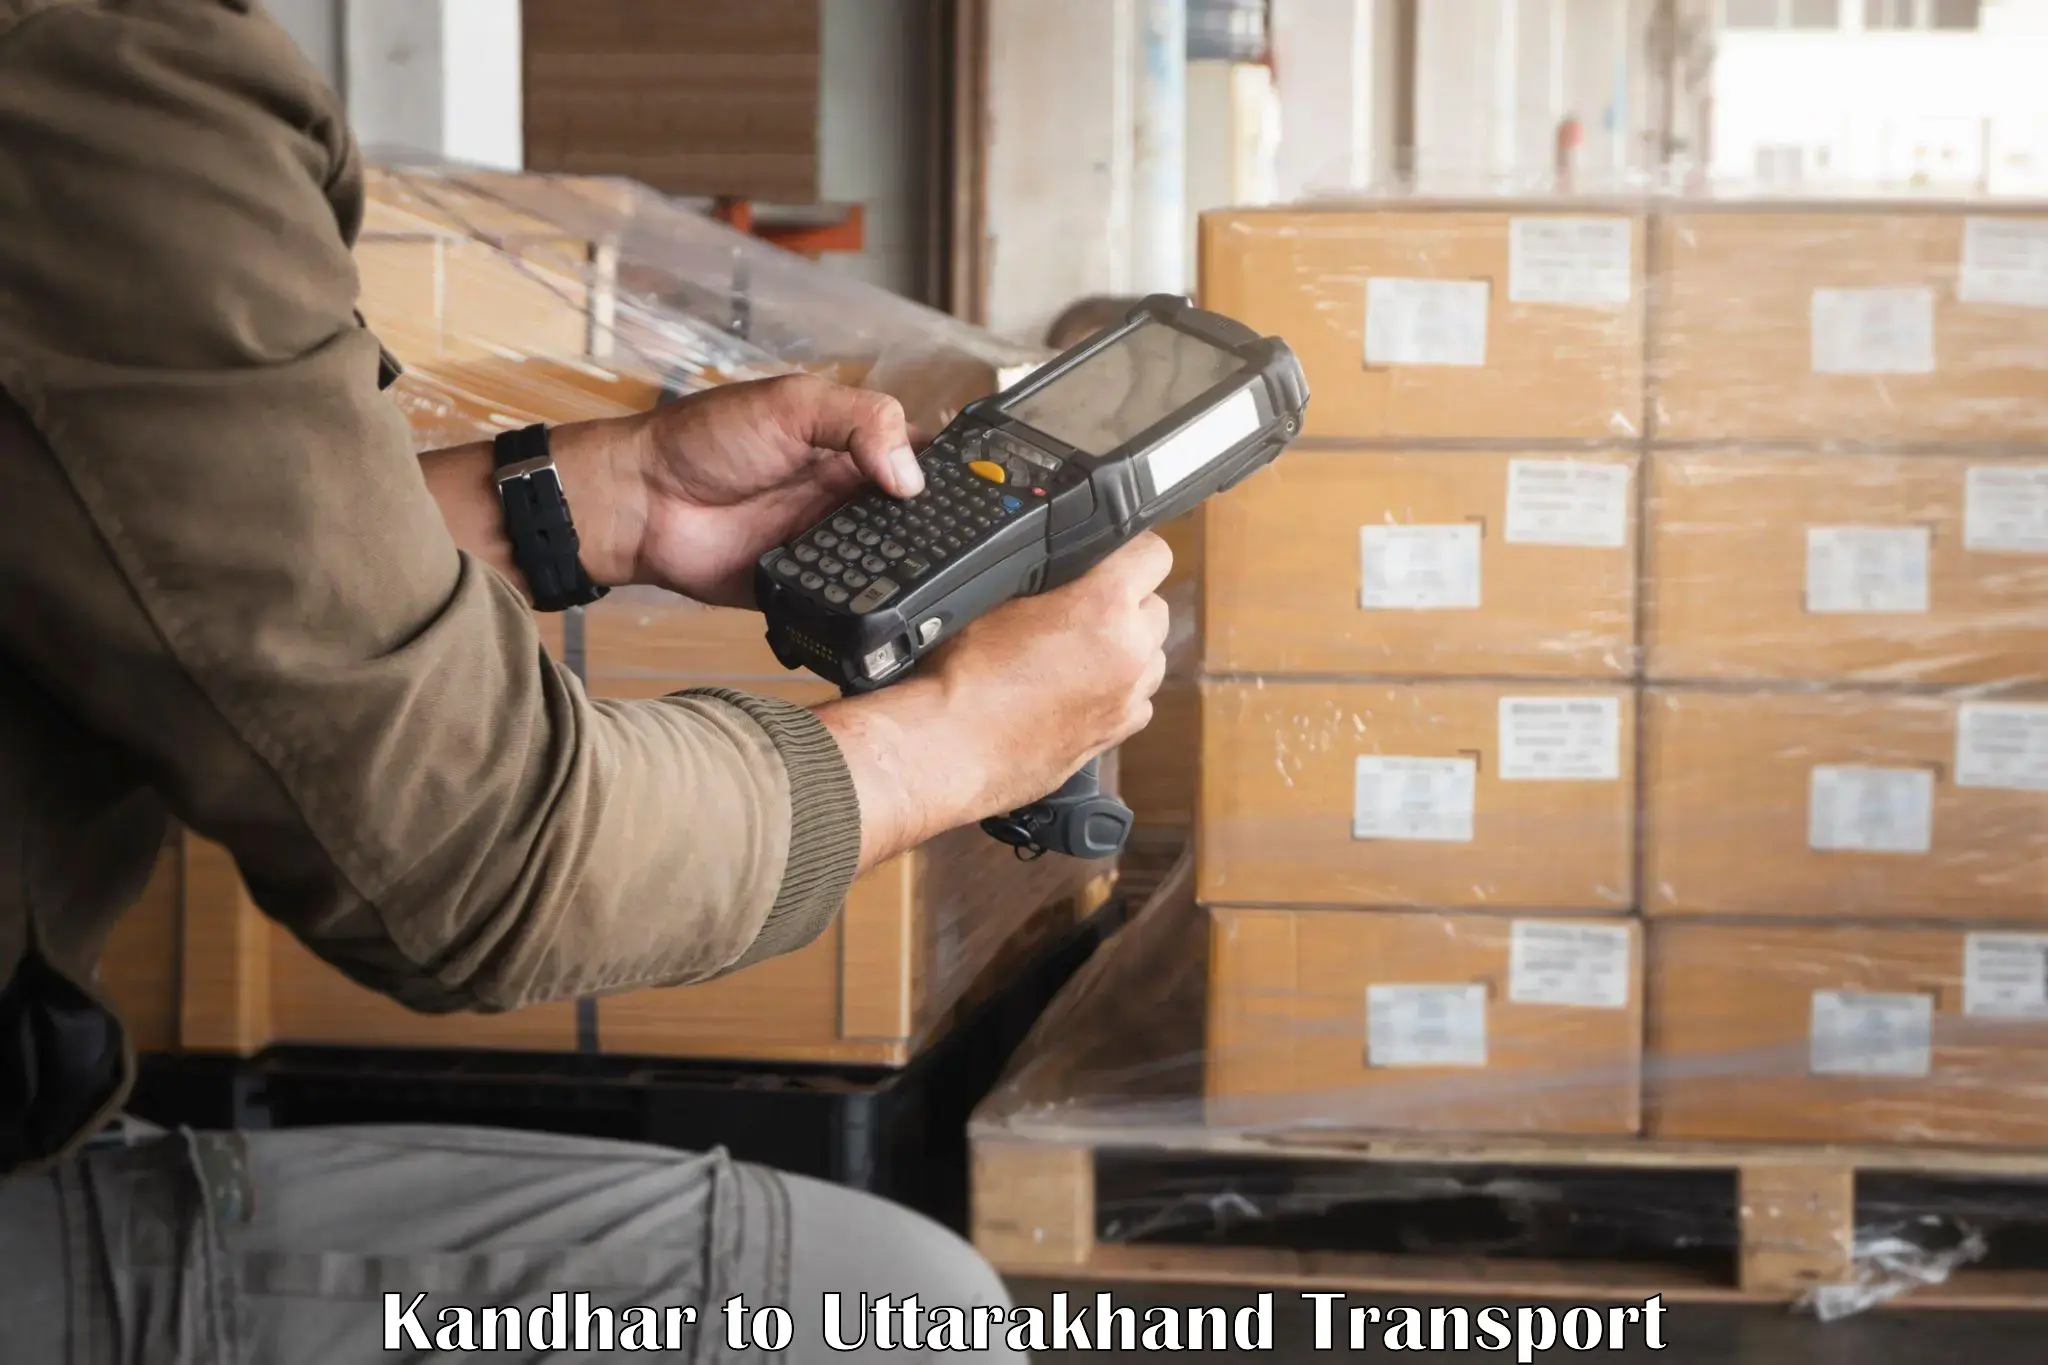 Express transport services Kandhar to Rishikesh